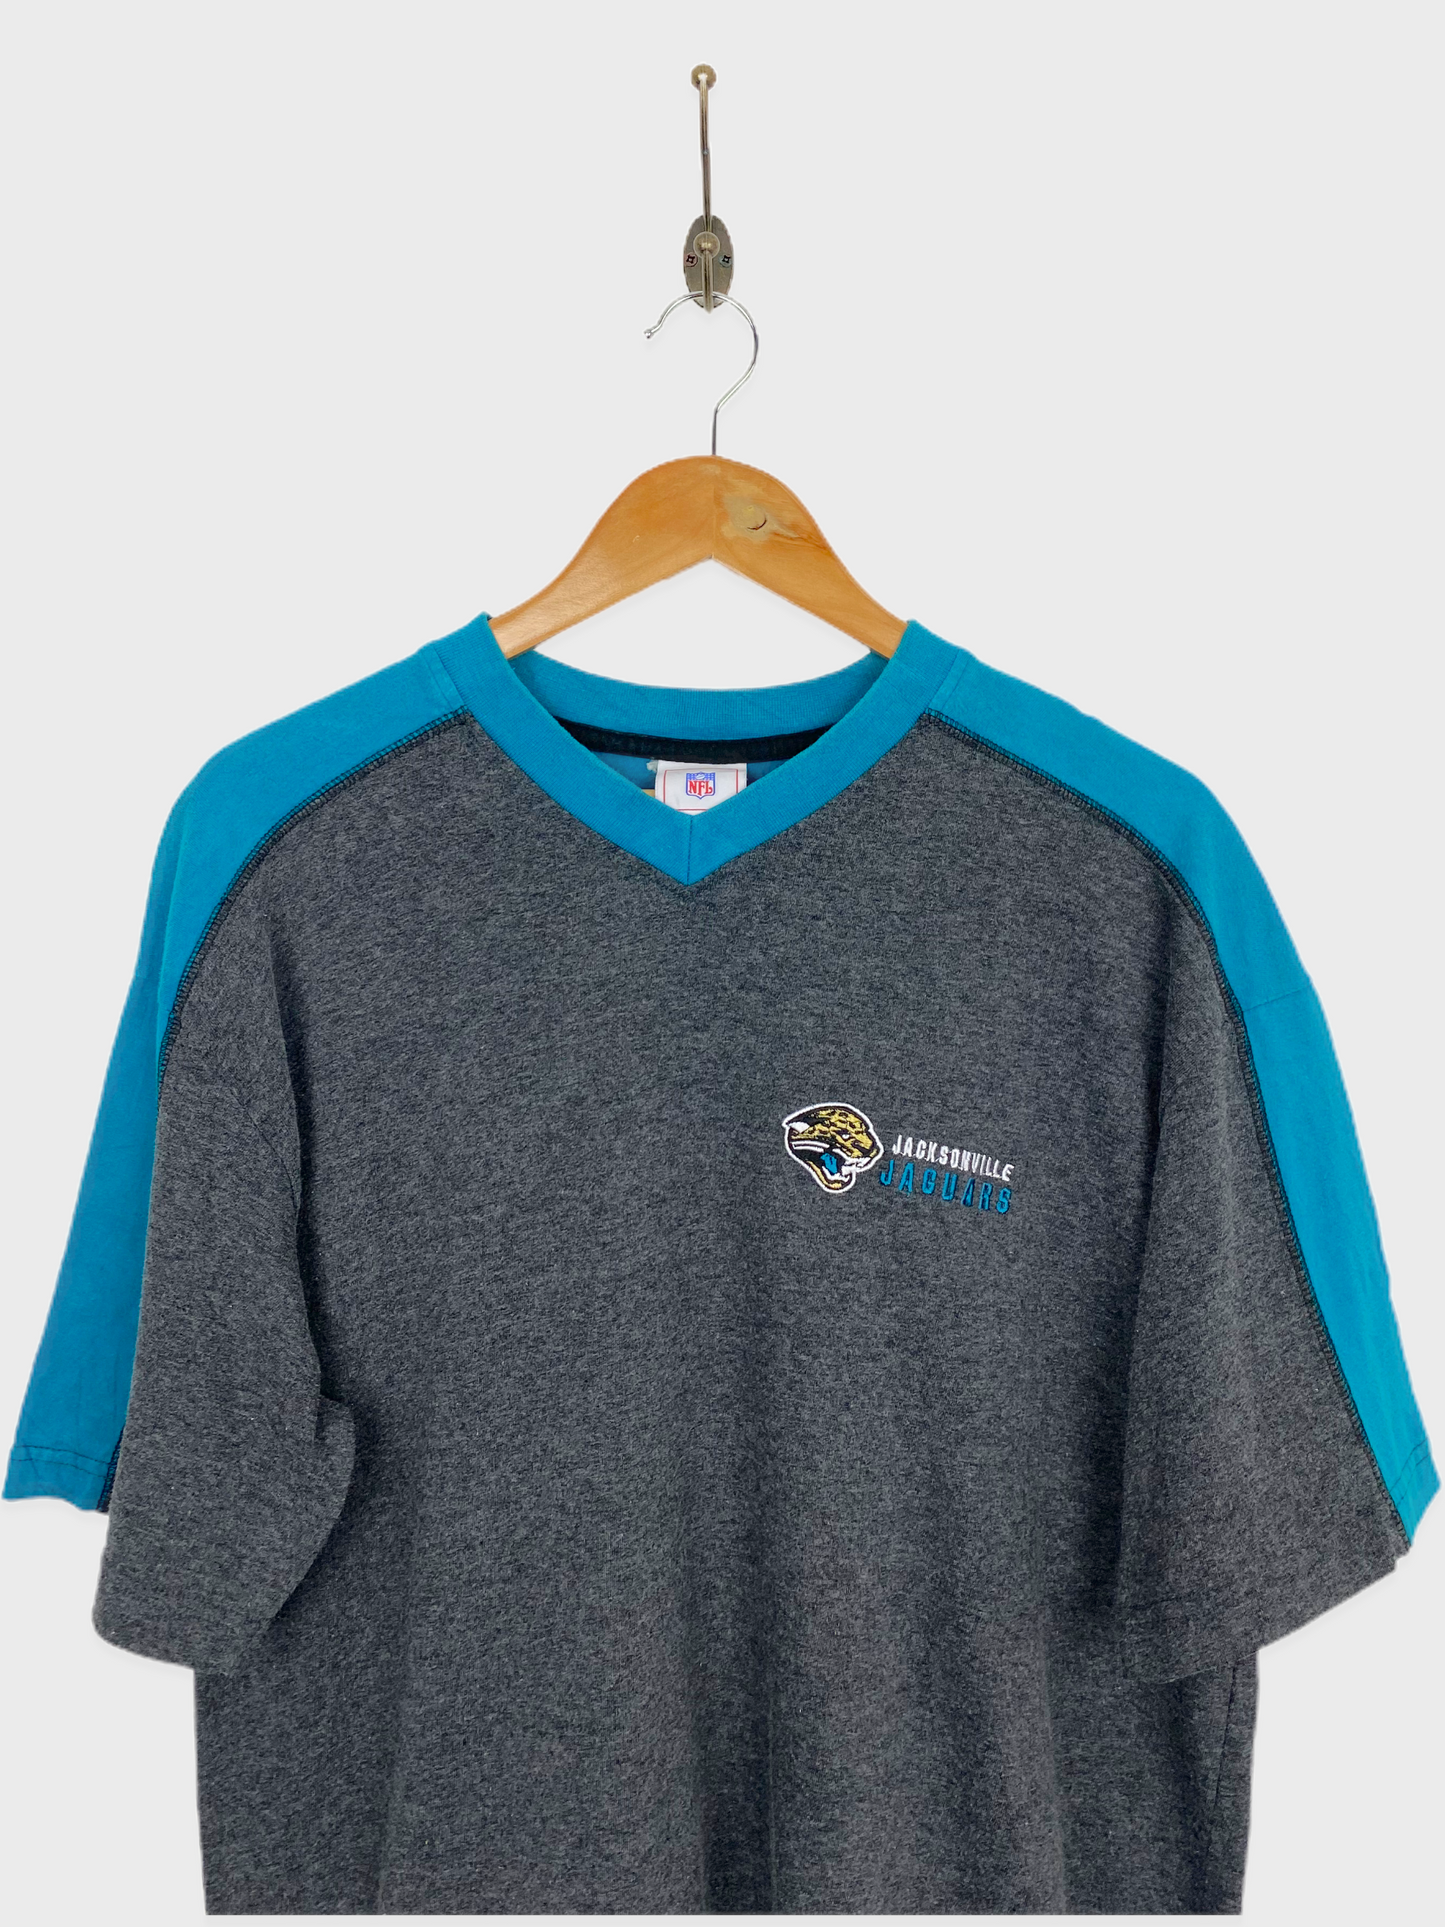 90's Jacksonville Jaguars NFL Embroidered Vintage T-Shirt Size L-XL